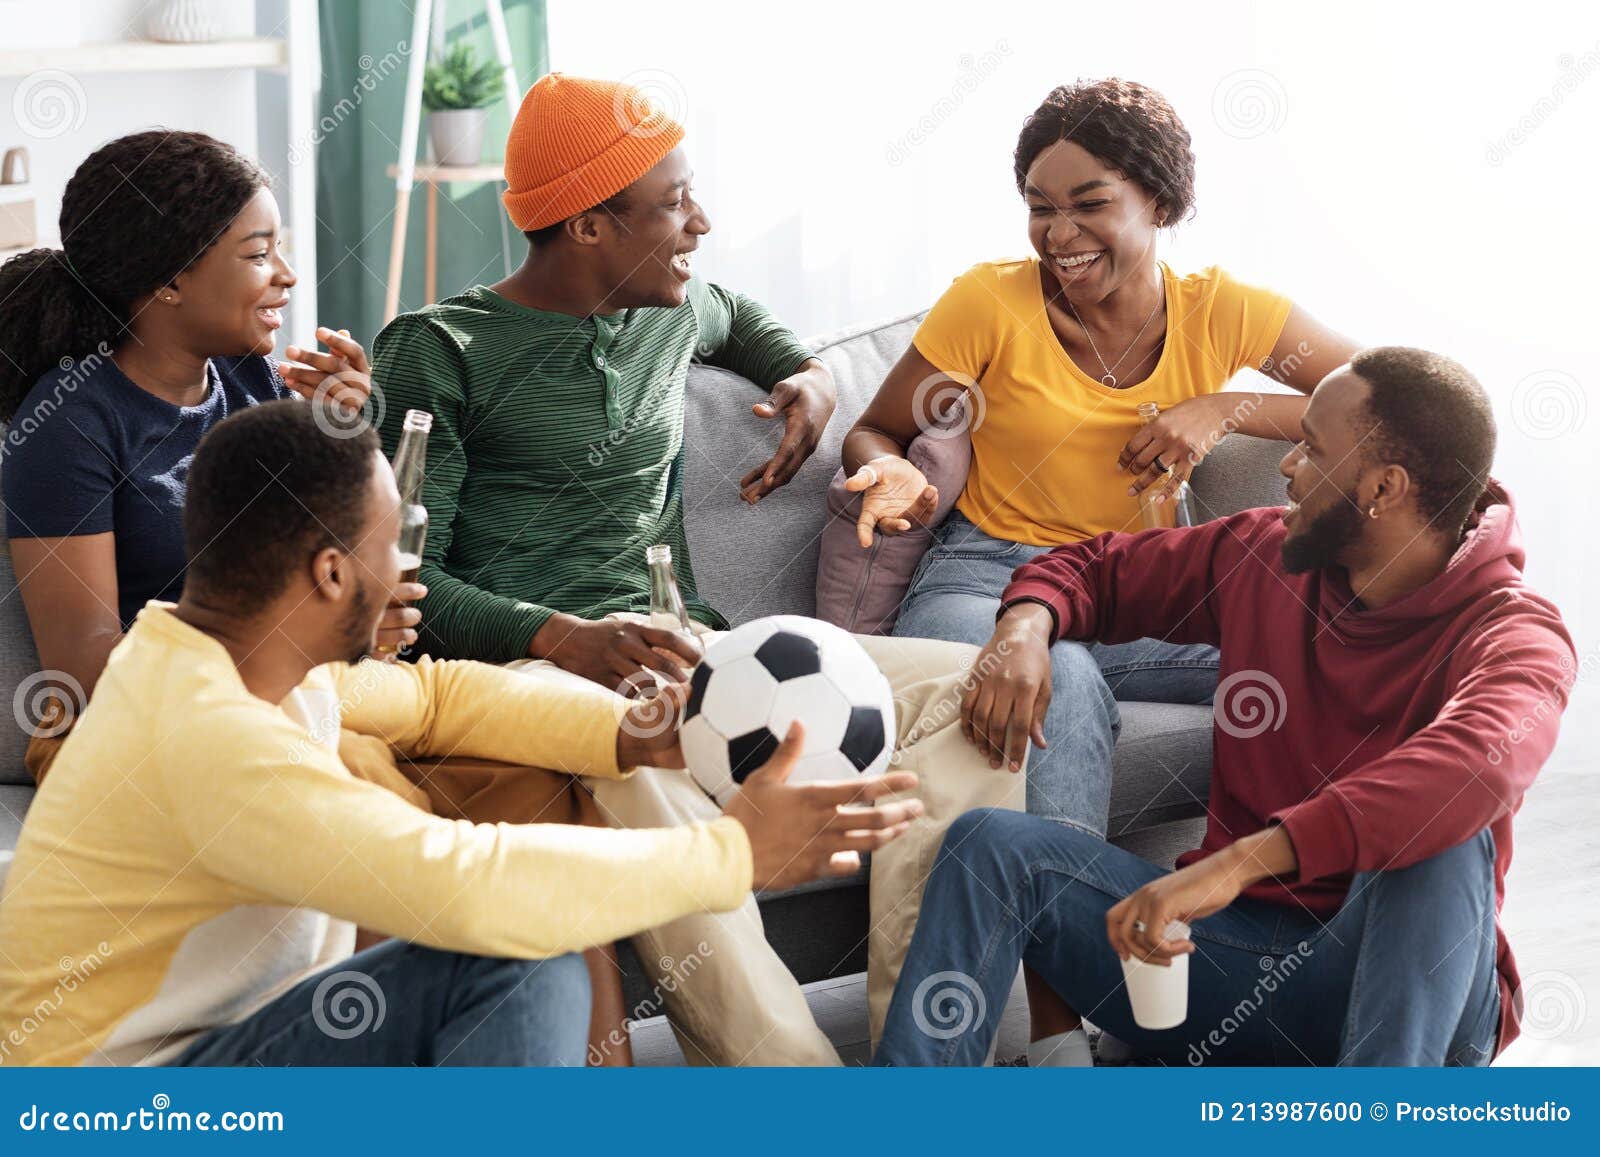 Grupo de amigos alegres se divertindo enquanto assiste a jogos